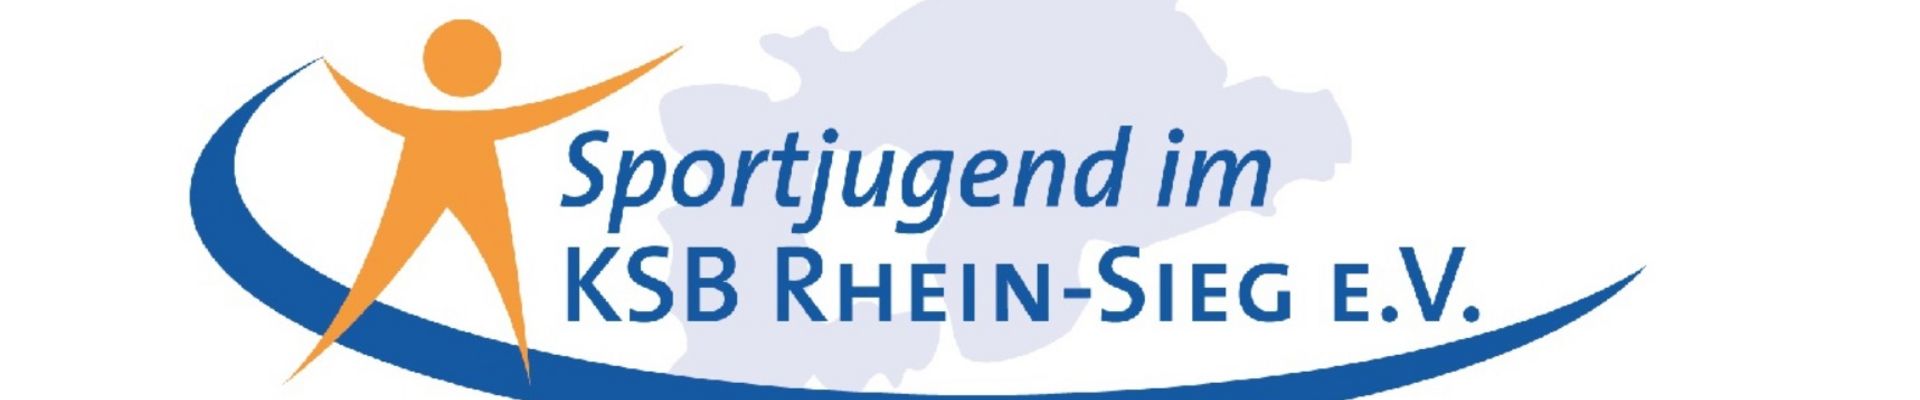 KSB Rhein-Sieg e.V.